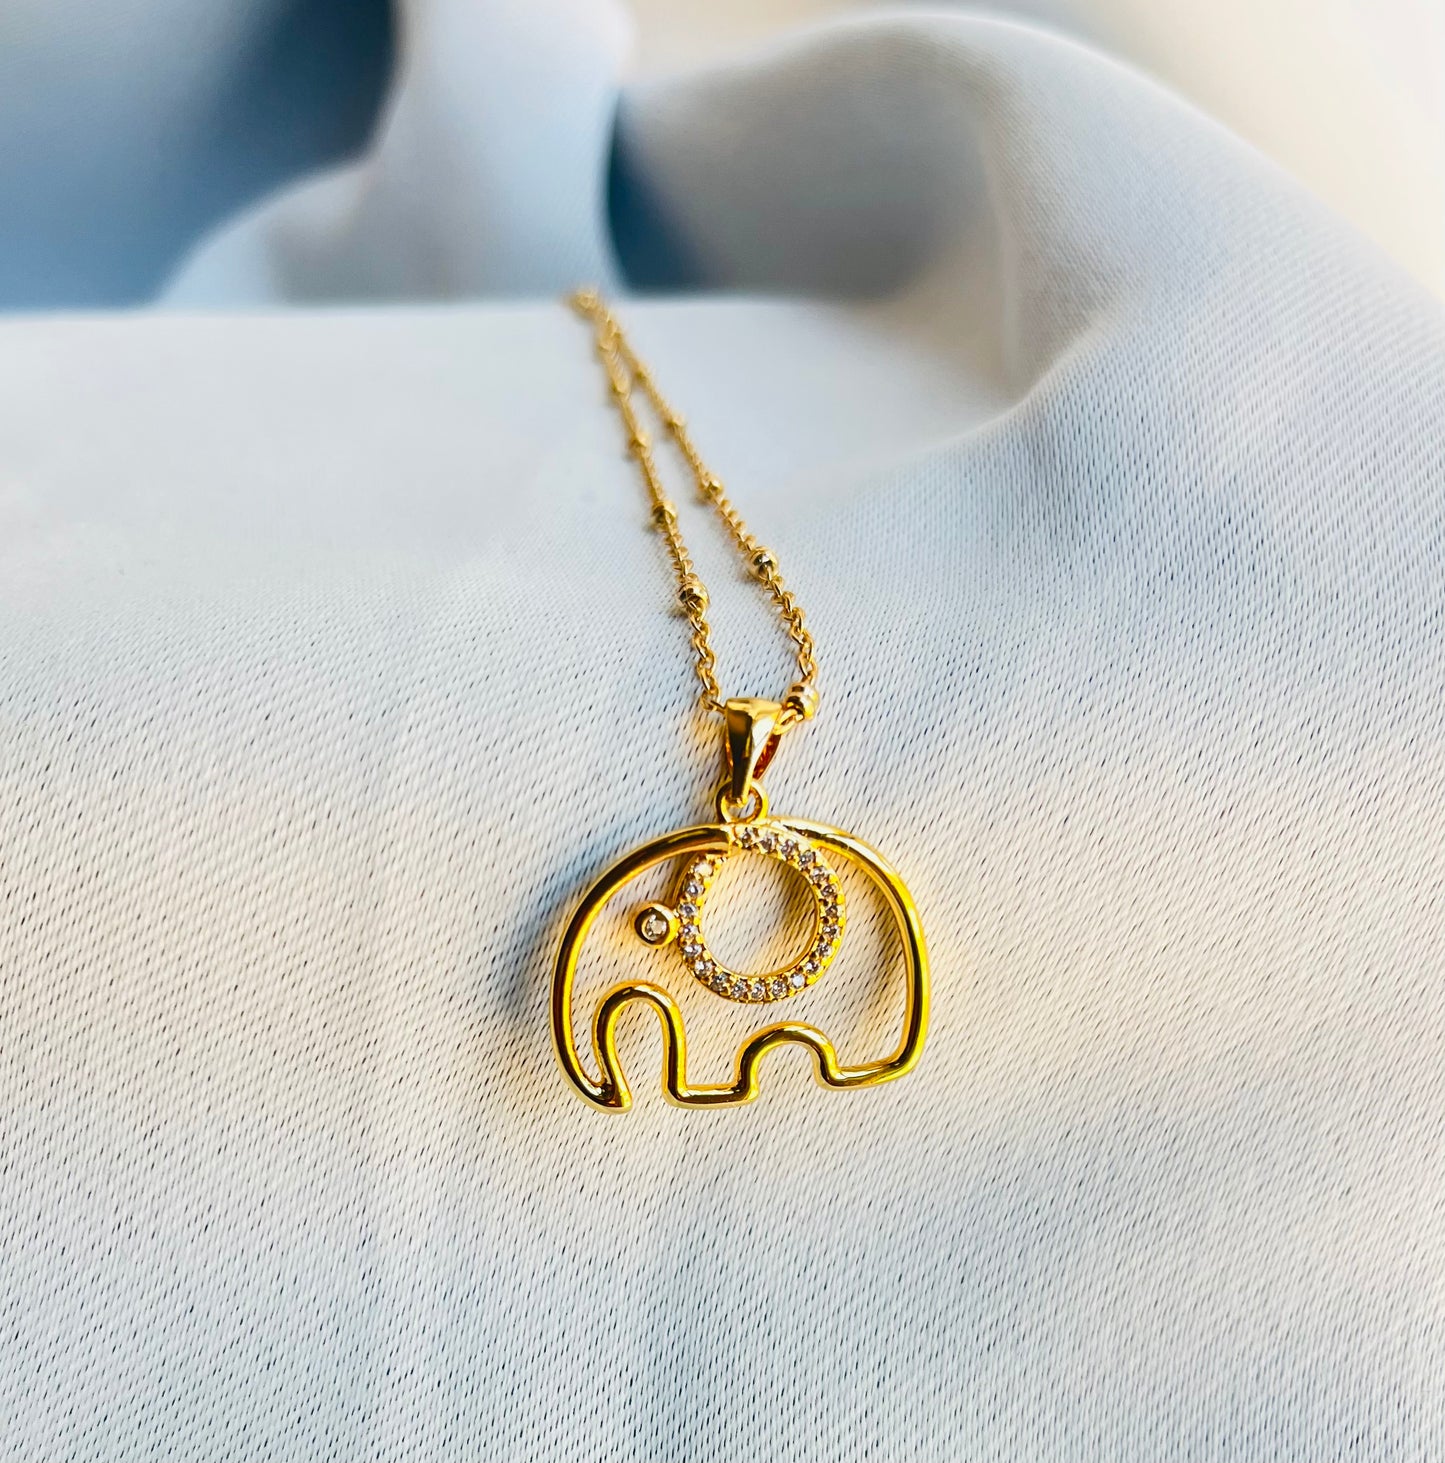 The Original Elephant Necklace